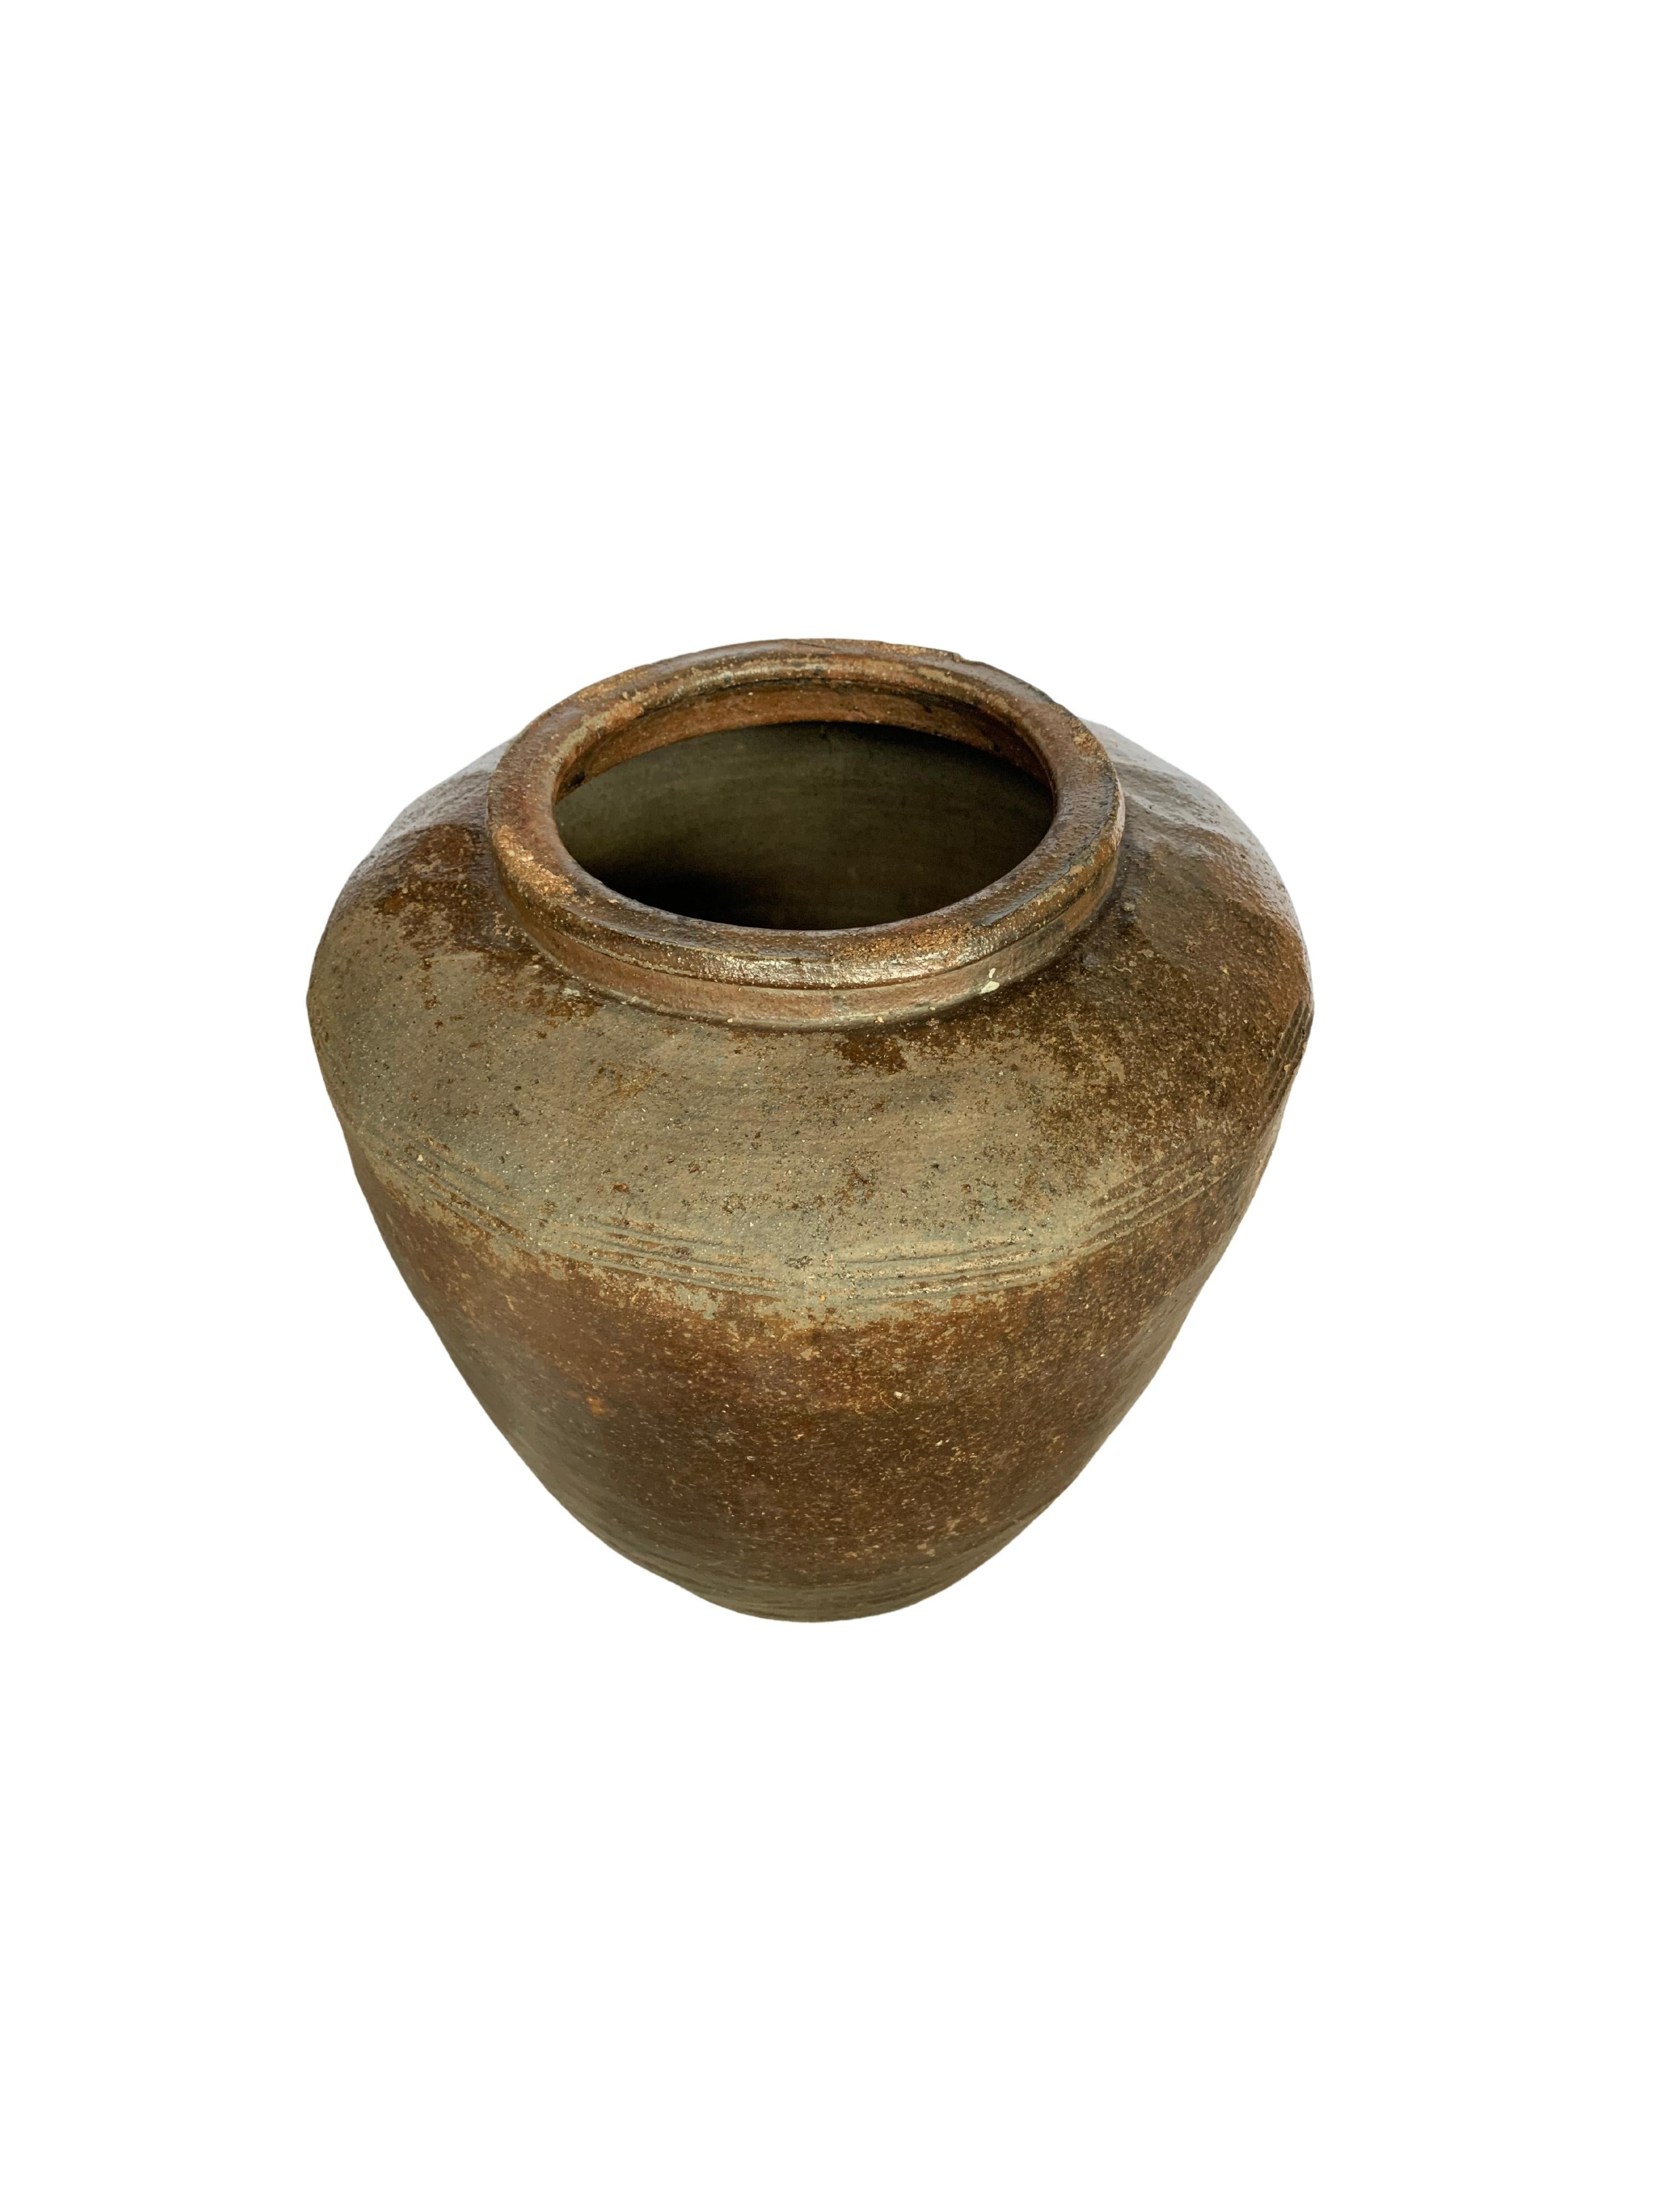 Antique Chinese Brown & Black Glazed Ceramic Salty Egg Jar, c. 1900 For Sale 4